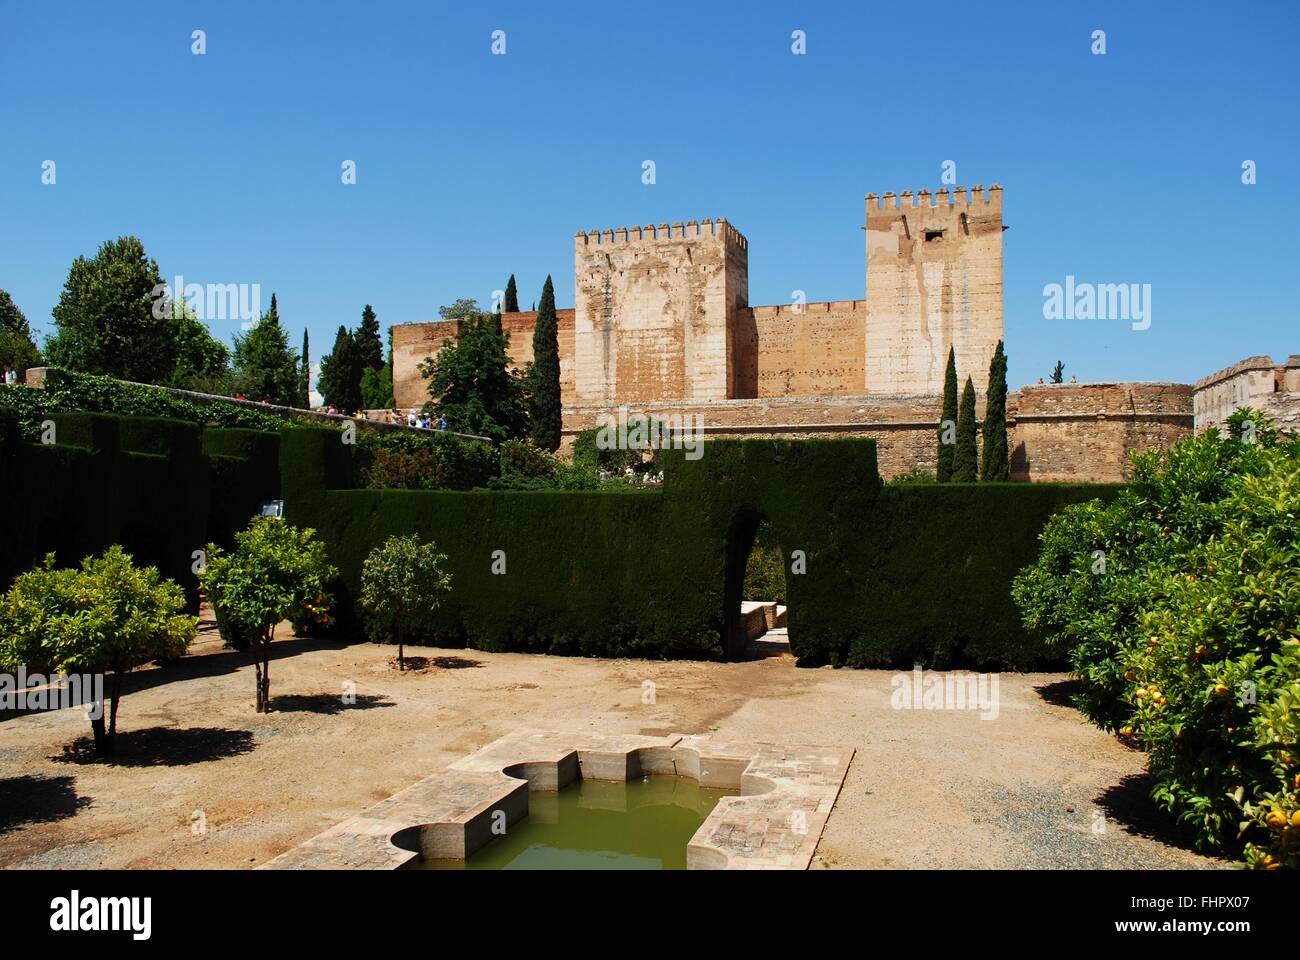 Corte di cisterna dotata di torri del castello, Alhambra Palace, Granada, Spagna, Europa occidentale. Foto Stock